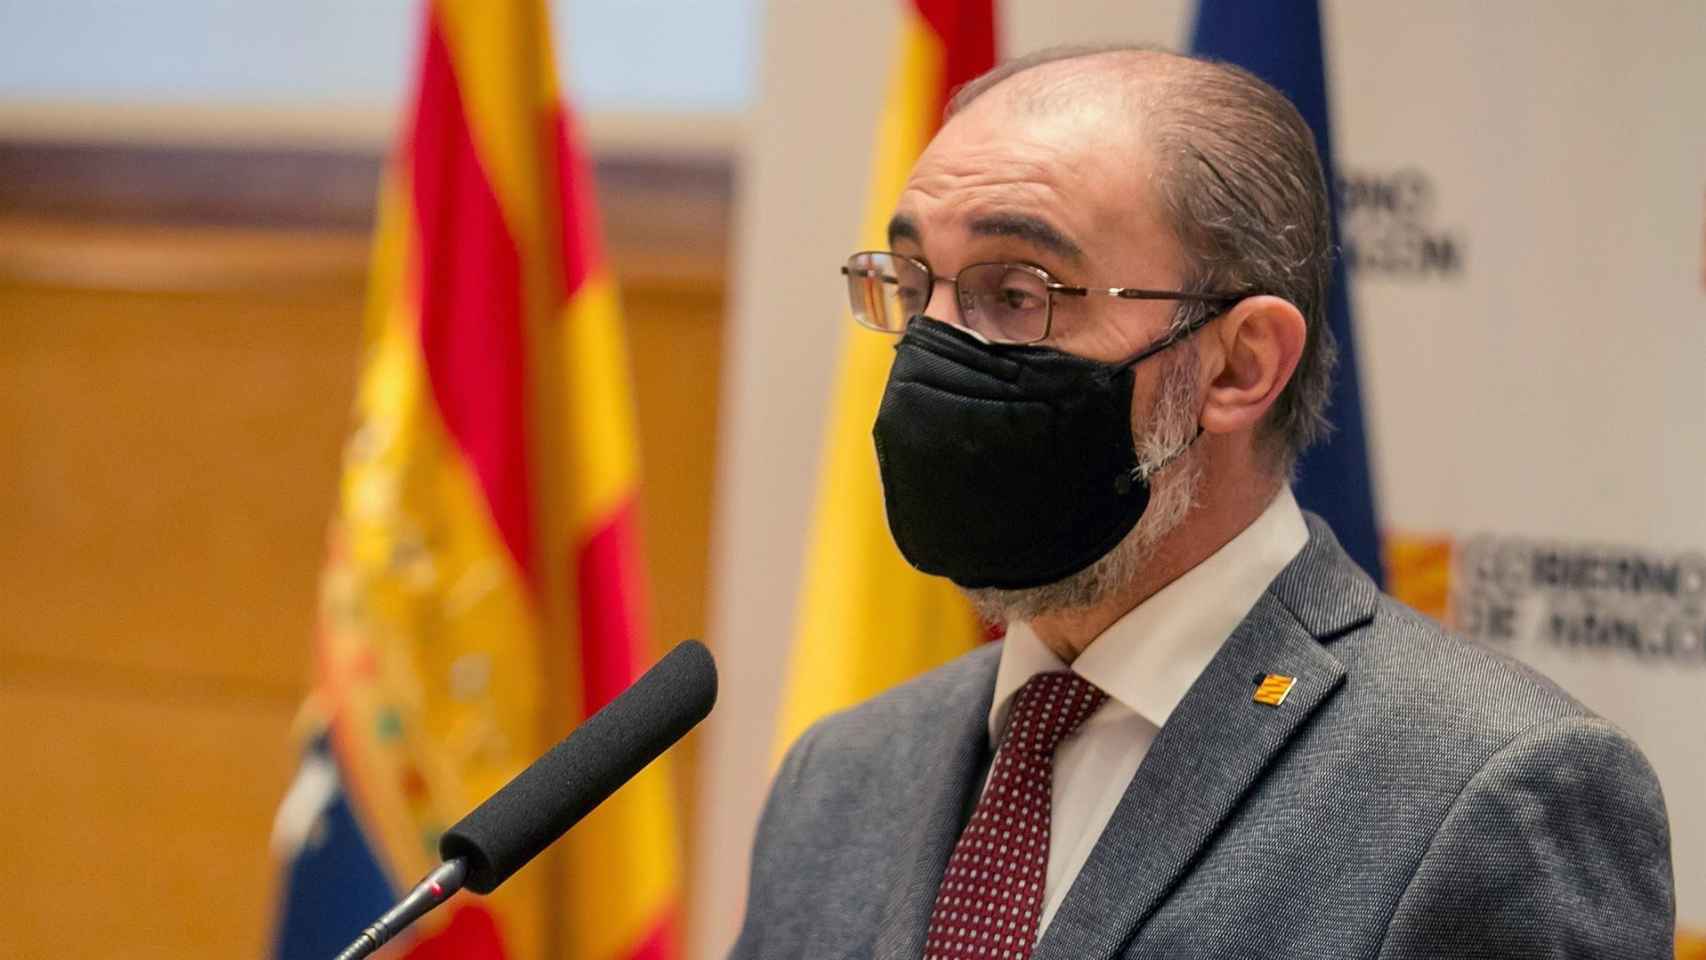 El presidente de Aragón, Javier Lambán, en una imagen de archivo / EFE - Javier Cebollada